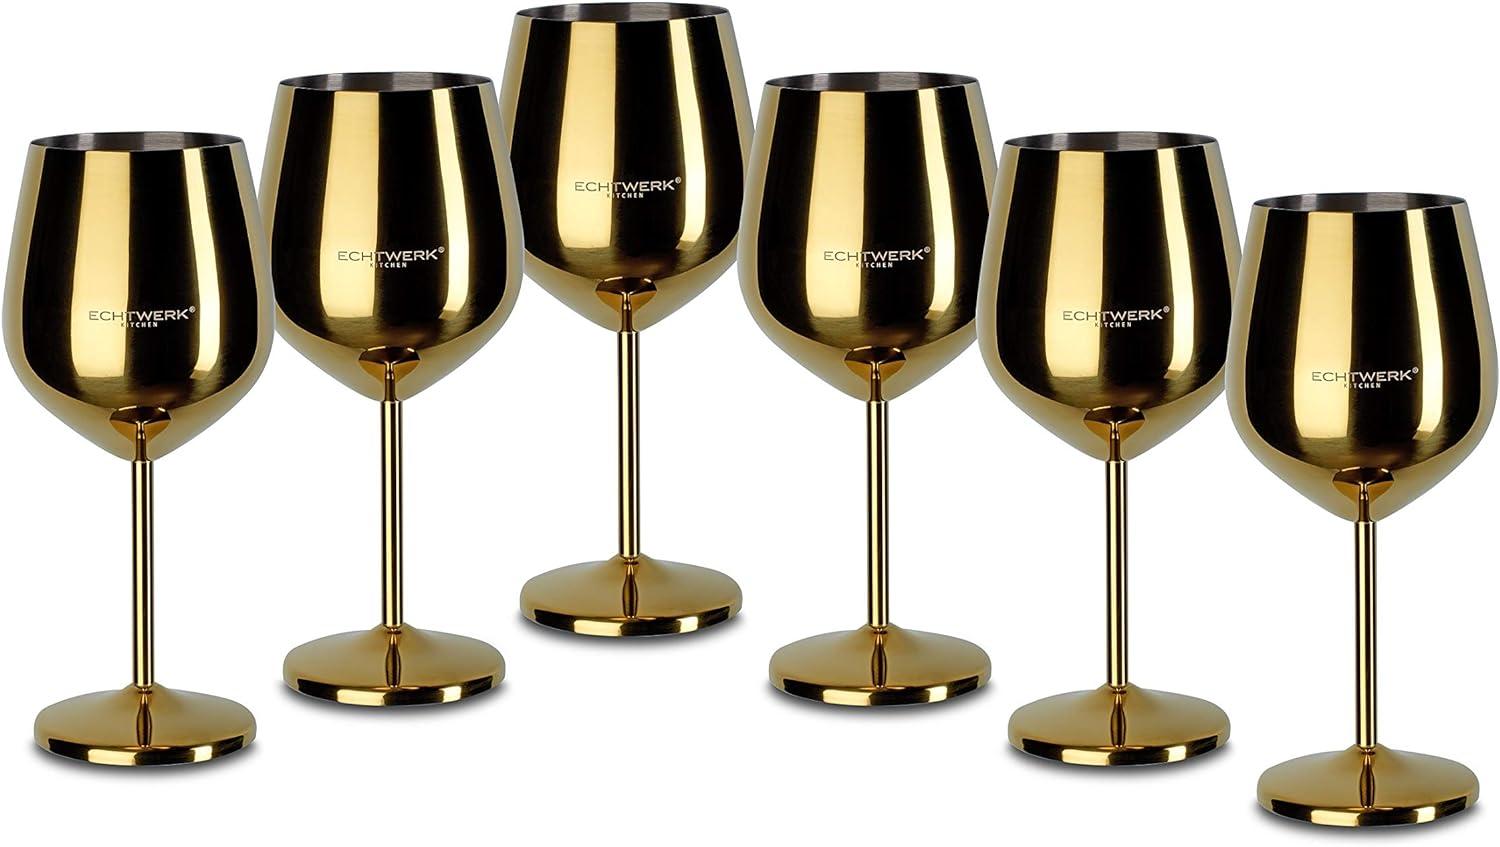 Echtwerk Weinkelche aus Edelstahl 6tlg Edition Gold Bild 1